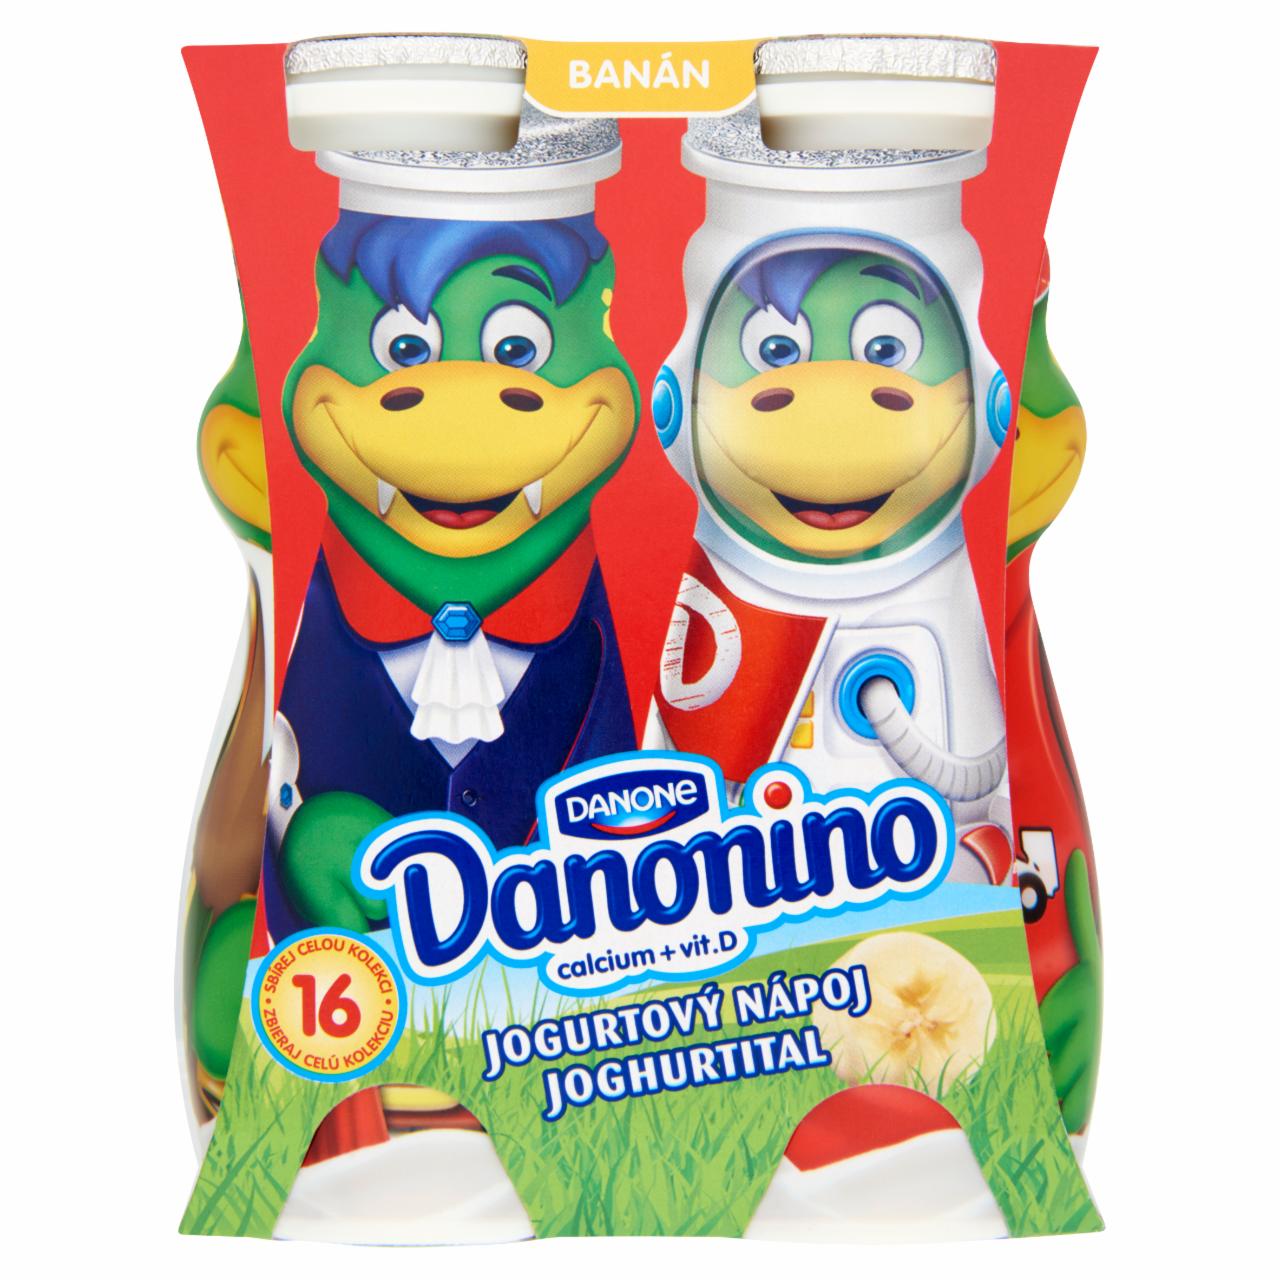 Képek - Danone Danonino zsírszegény, élőflórás, banánízű joghurtital kalciummal és D-vitaminnal 4 x 100 g